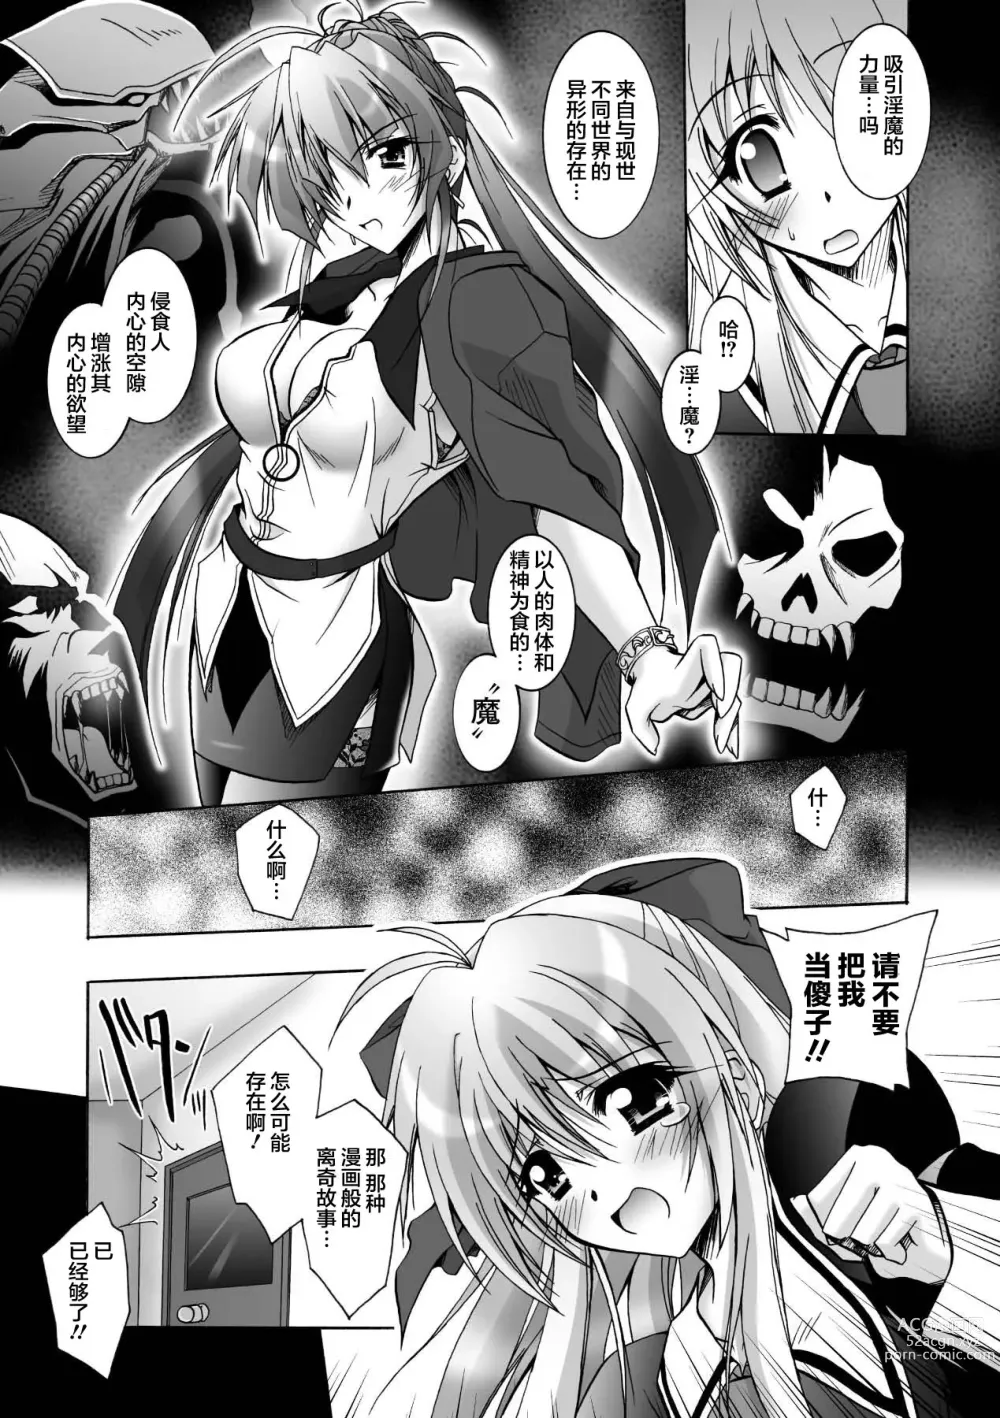 Page 7 of manga Matantei Toudou Shizuka no Inyou Jikenbo